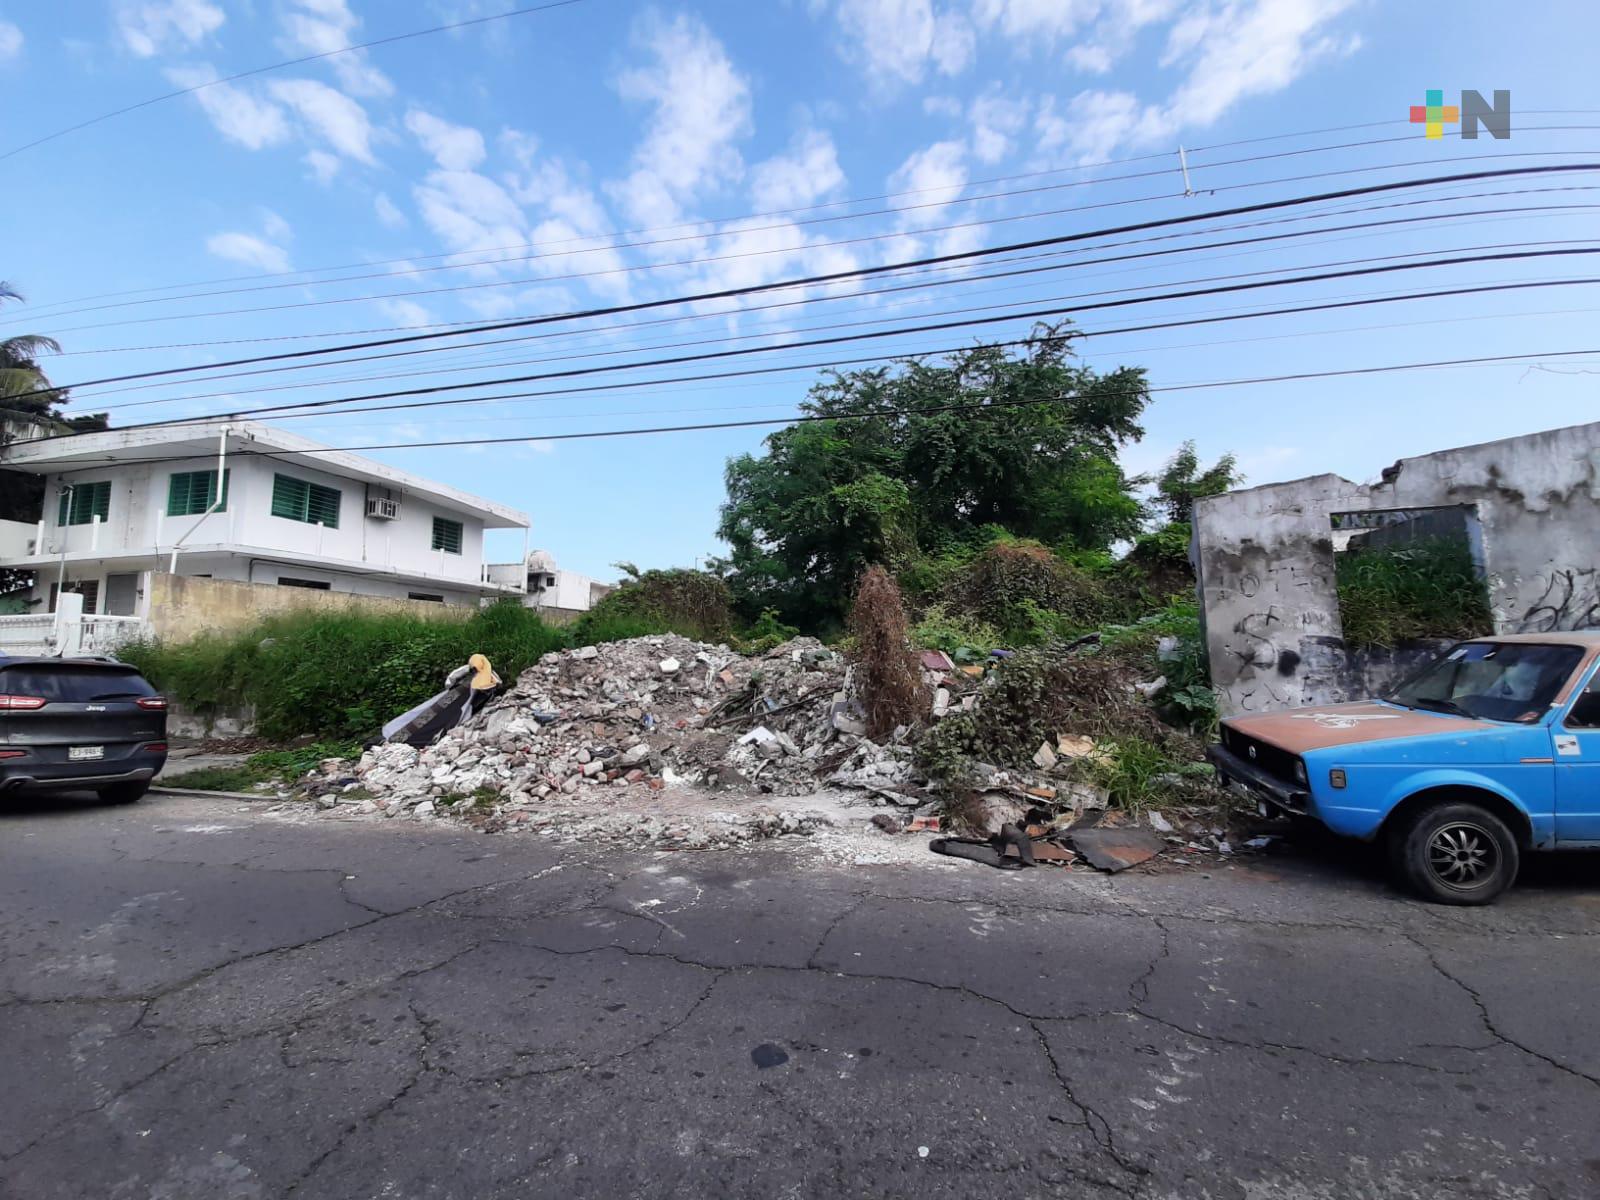 Lote baldío de Boca del Río se convierte en foco de infección, denuncian vecinos